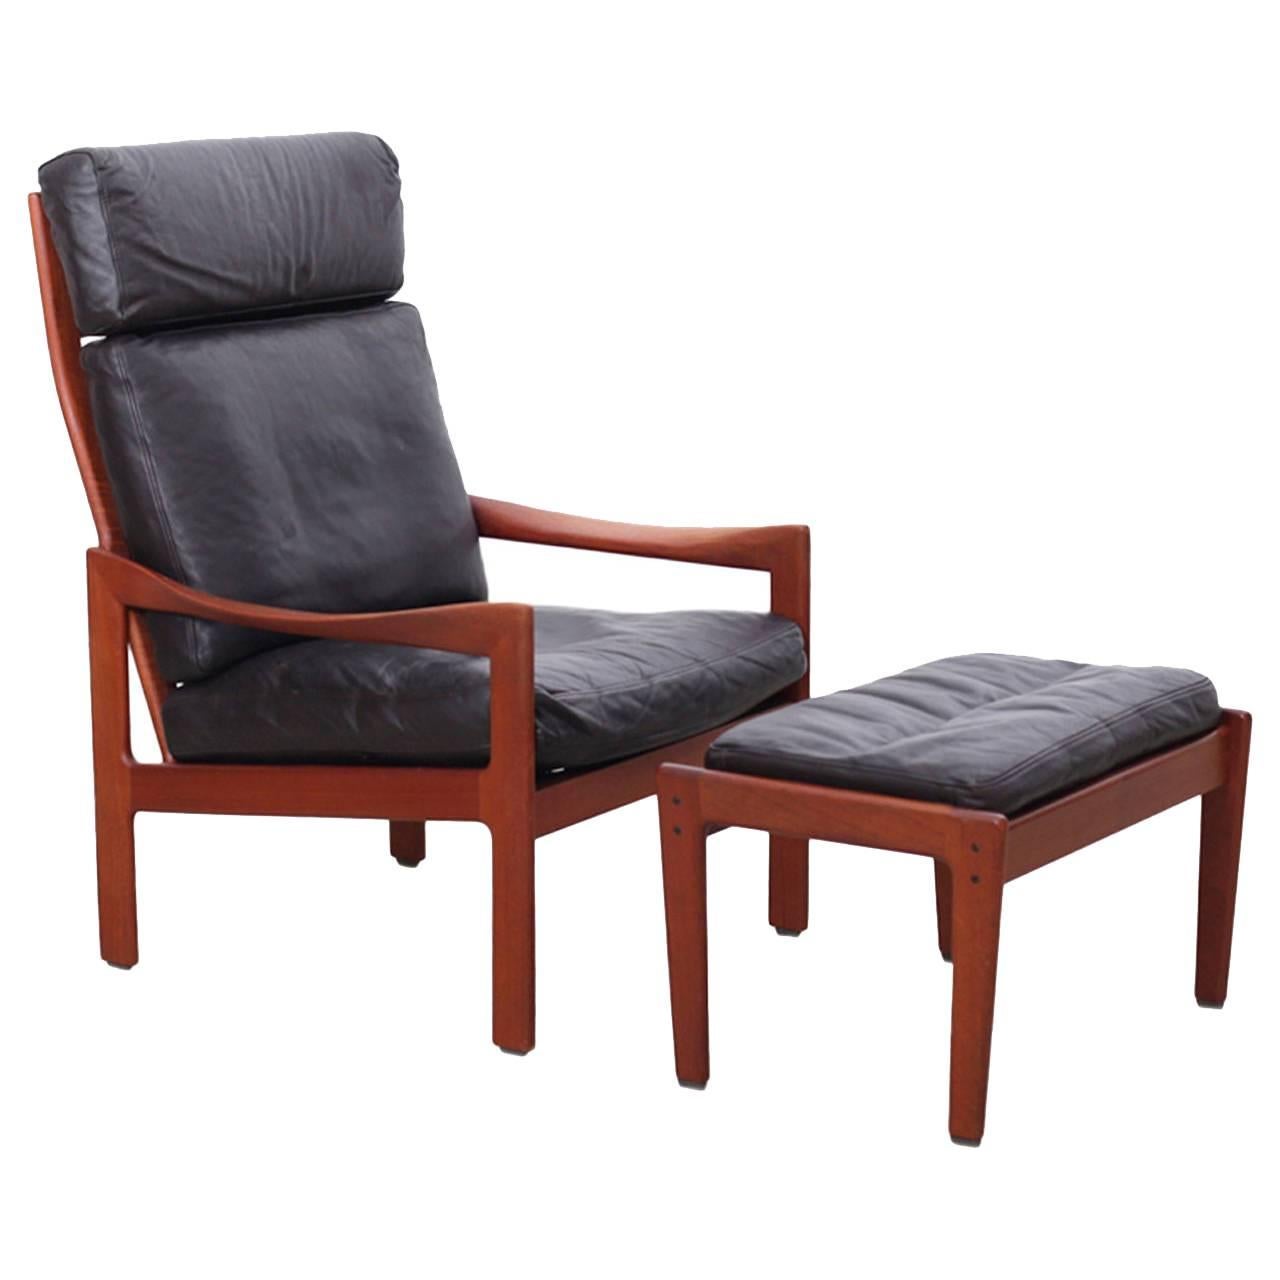 Illum Wikkelsø Teak Highback Lounge Chair and Ottoman